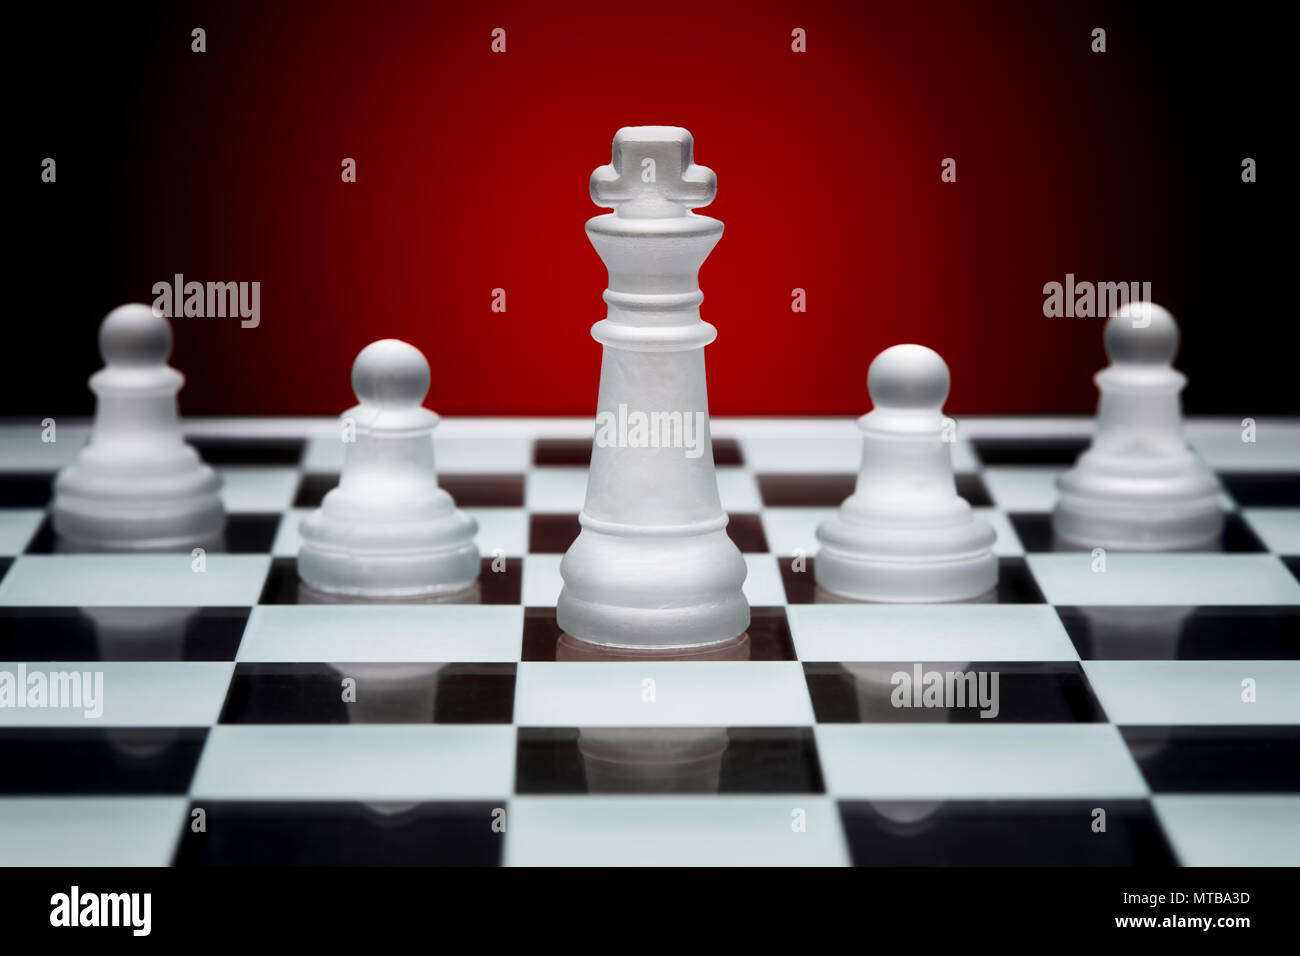 Schach spiel strategie. König und drei Bauern aufgereiht. Konzept der Teamarbeit, Führung und Solidarität. Stockfoto